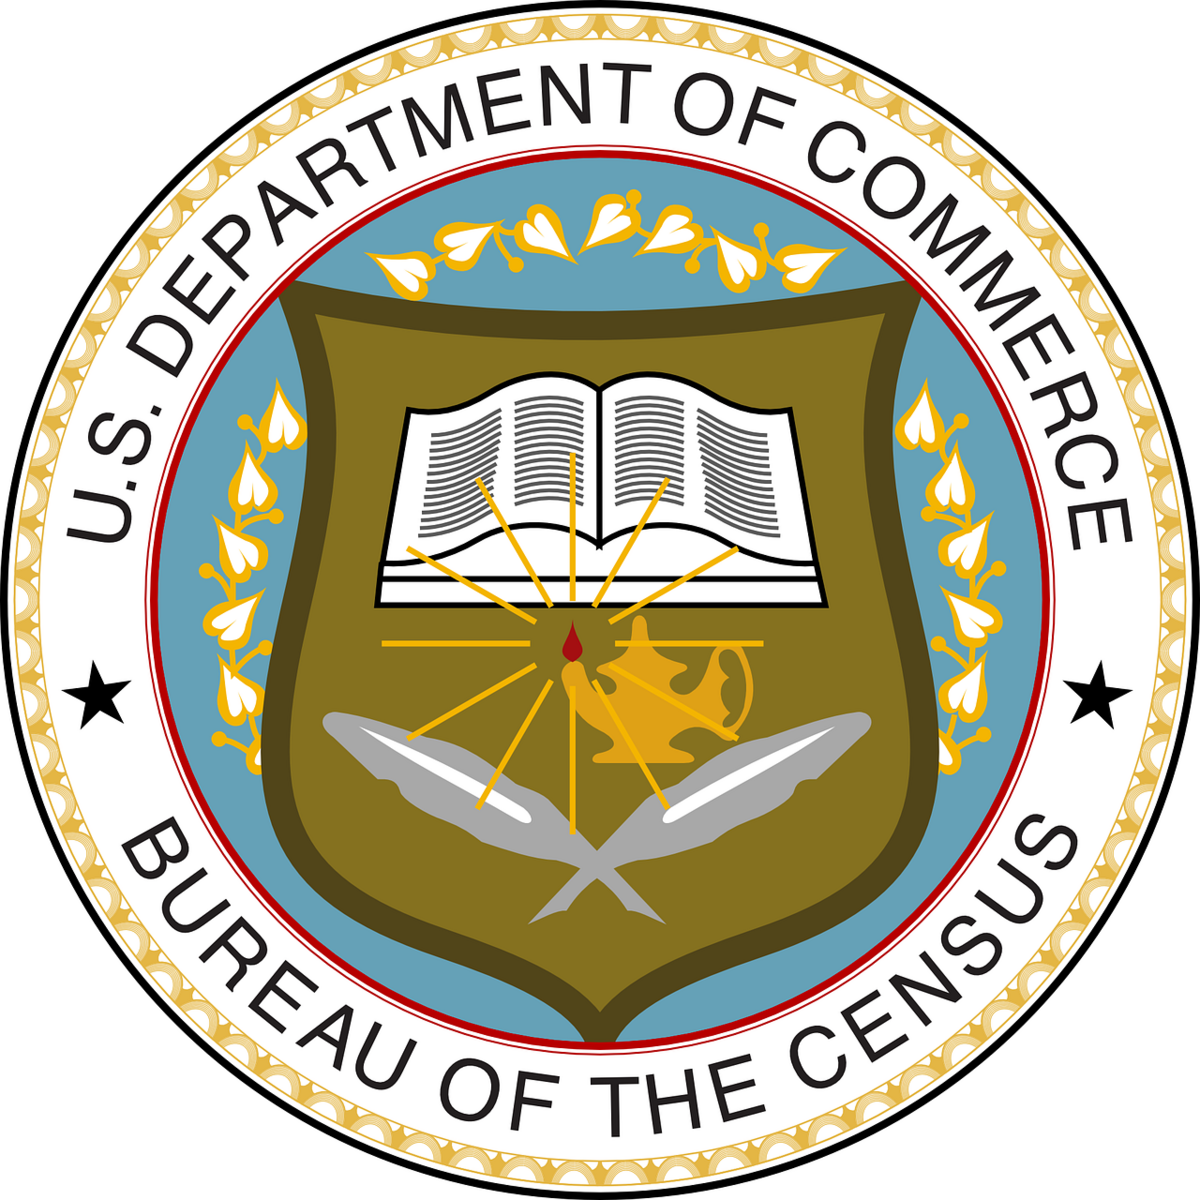 U.S Department of Commerce, Bureau of the Census seal